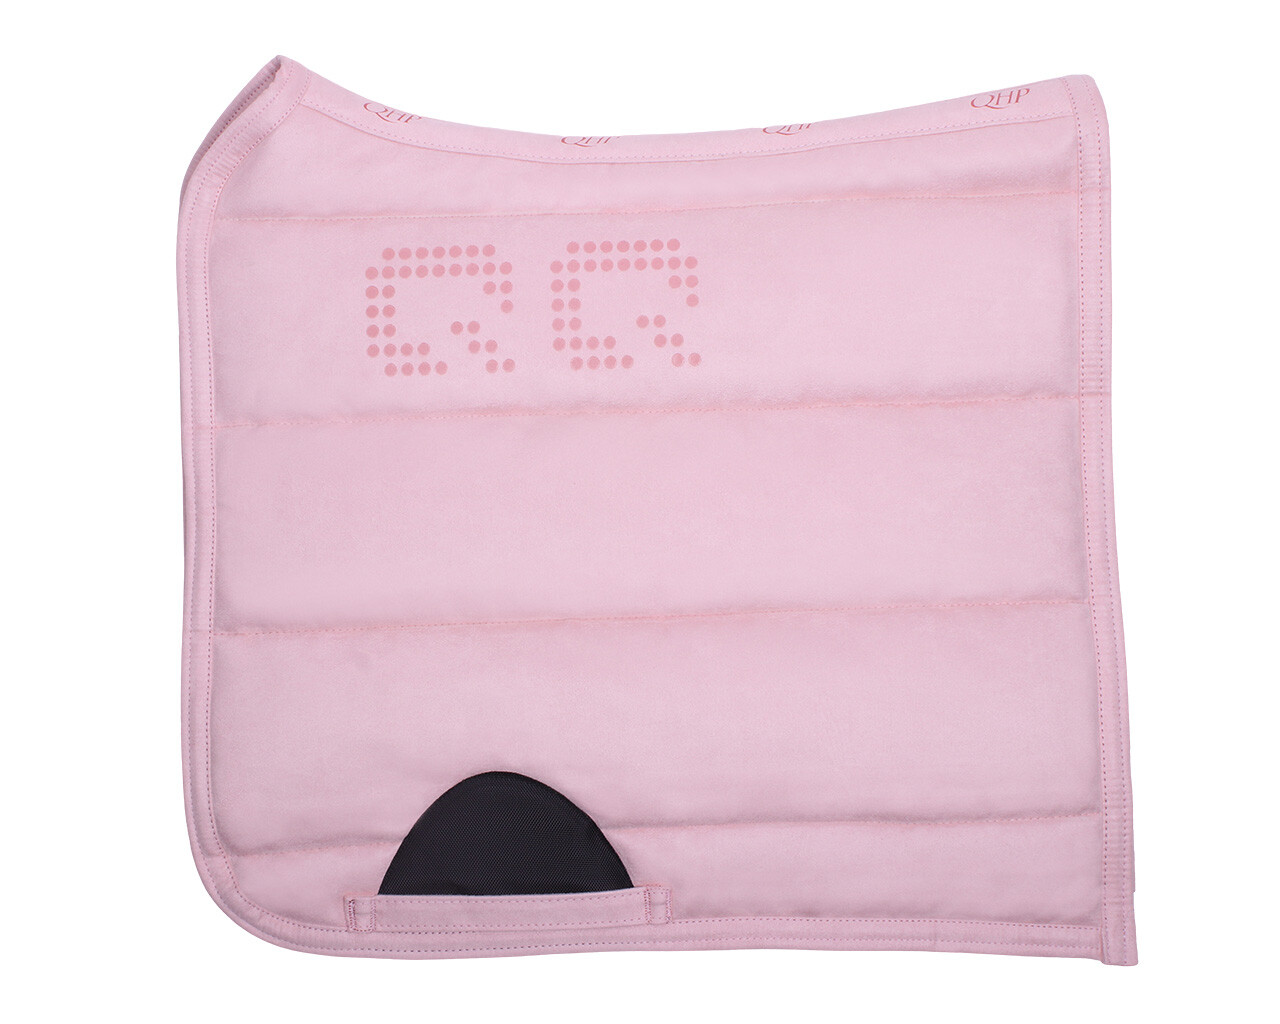 Podsedlová dečka PUFF PAD Super grip Barva: Soft pink (Světle růžová), Velikost: Full (drezurní)